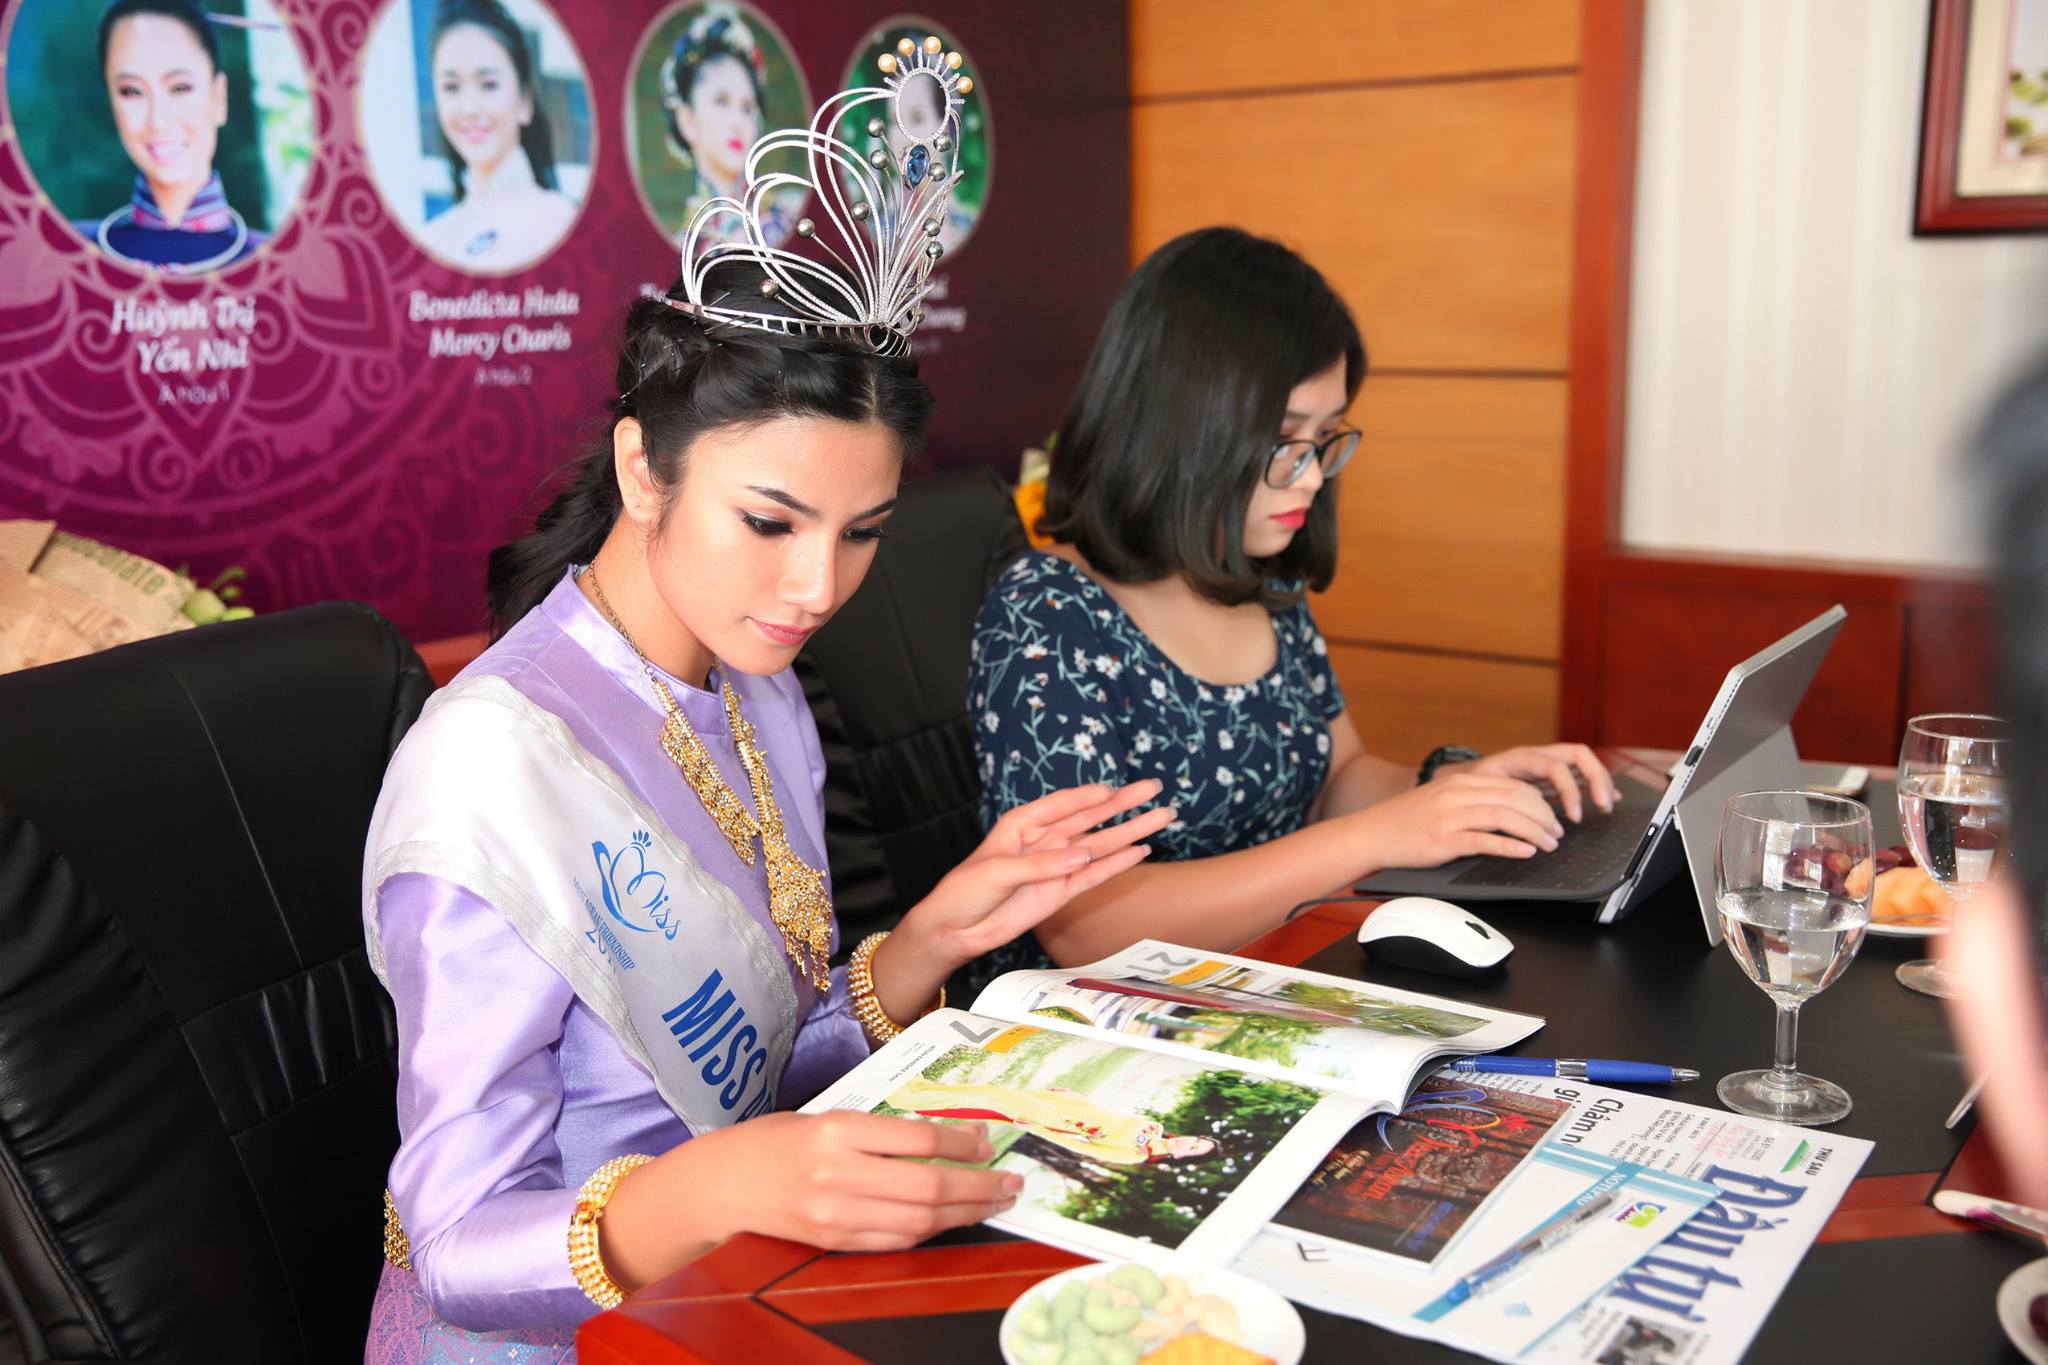 Hoa hậu Nuttanan Naree bên những ấn phẩm truyền thông chính thức cho đã đi cùng mình suốt cuộc thi